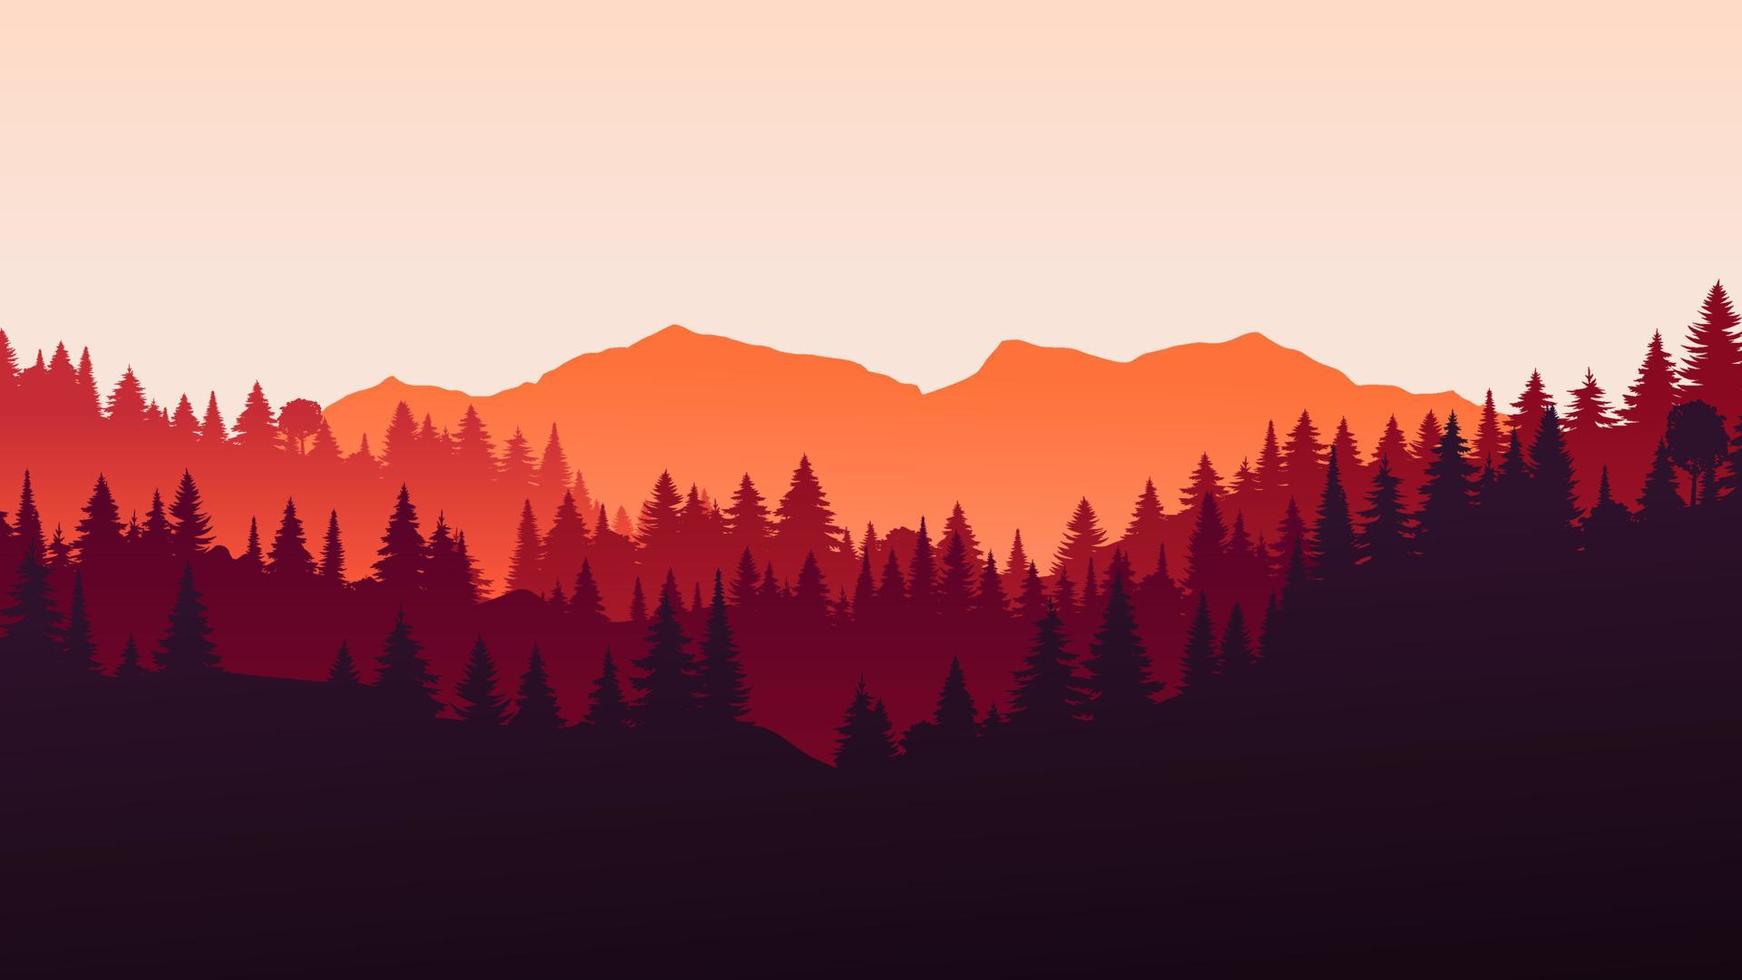 paesaggio orizzontale rosso vettoriale con nebbia, foresta, abete rosso, abete e luce solare mattutina. illustrazione della stagione autunnale di silhouette vista panoramica, nebbia e montagne arancioni. alberi che cadono. fuoco nel bosco.